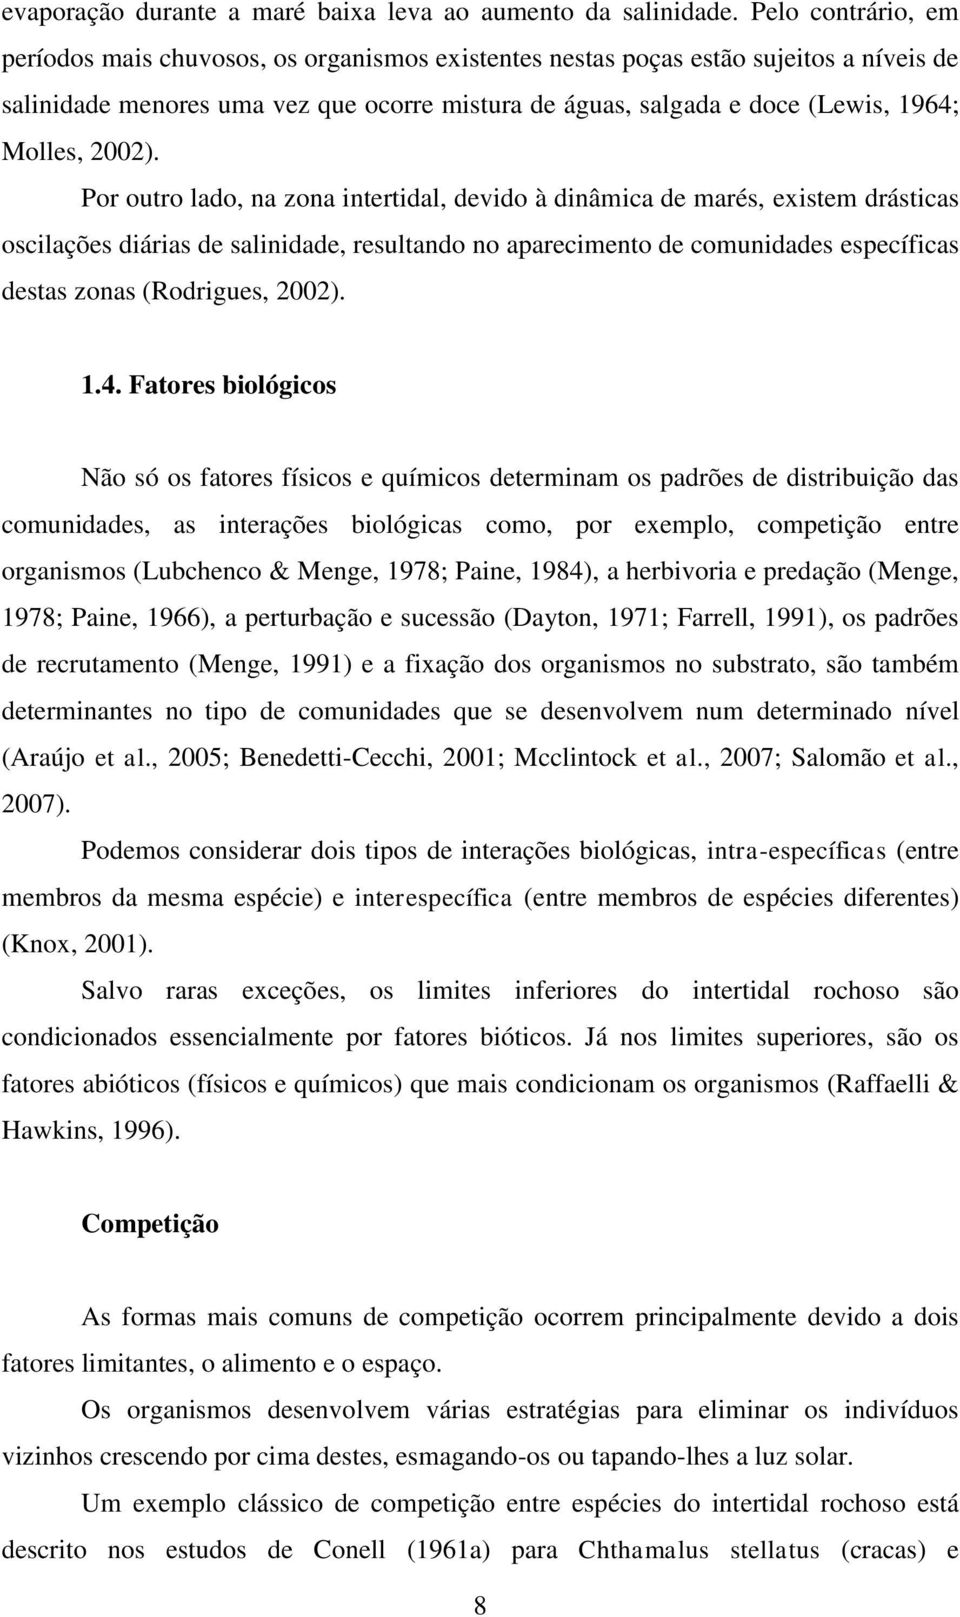 Molles, 2002).